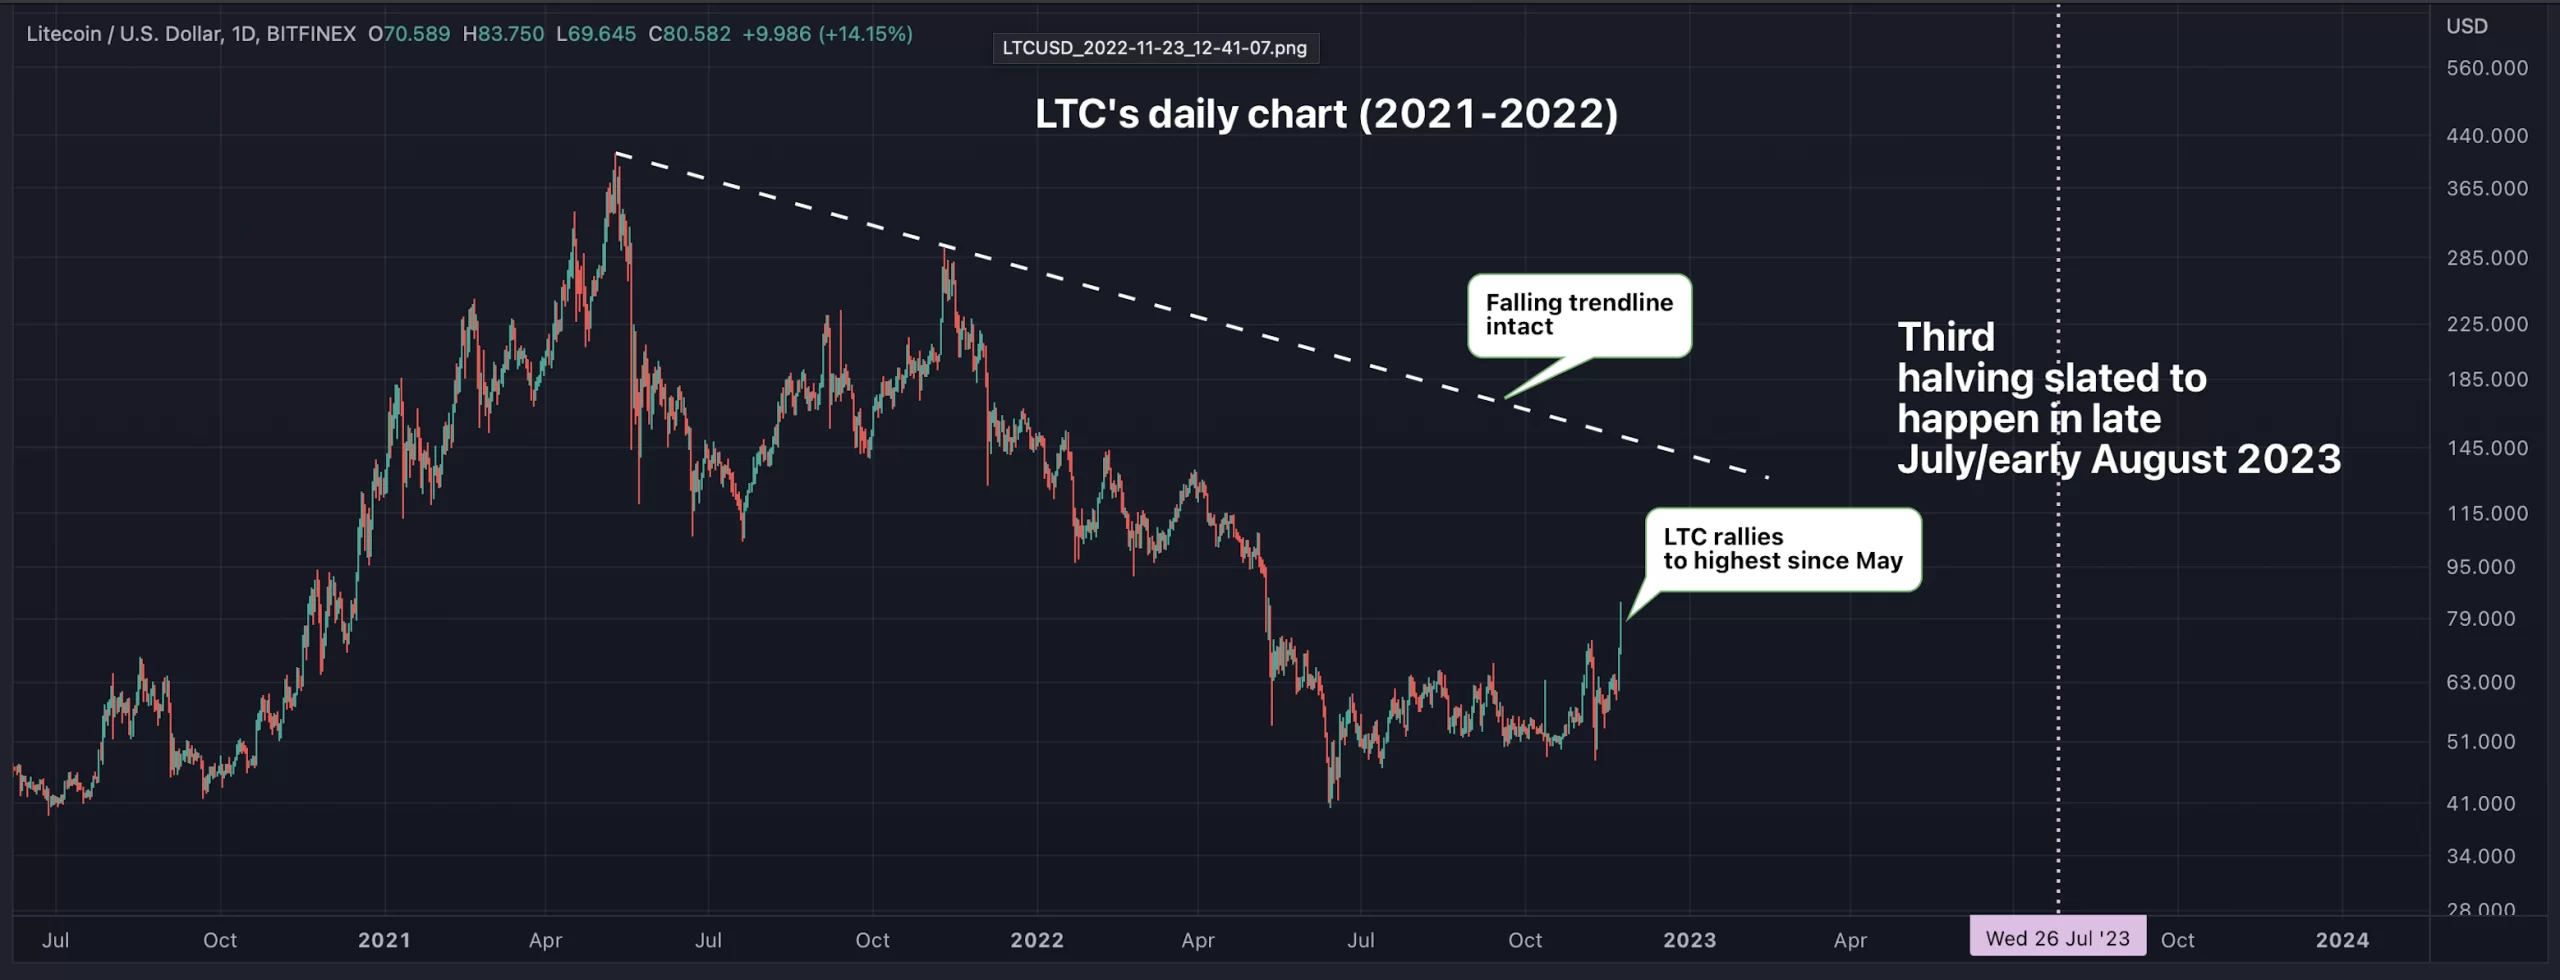 Litecoin price analysis chart